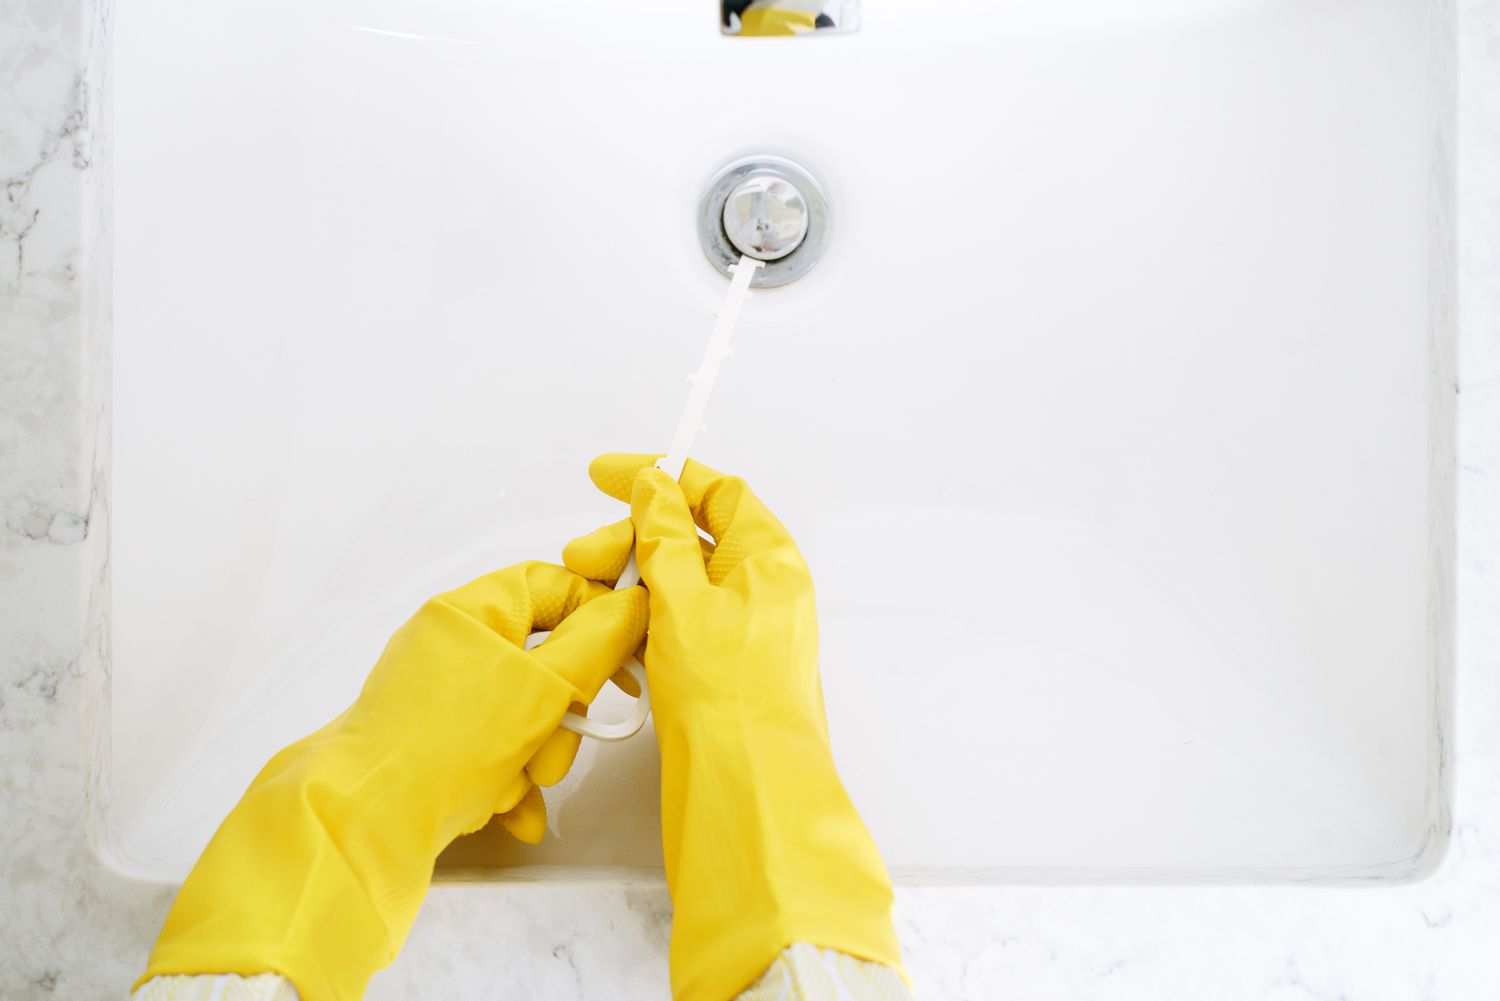 Herramienta Zip-it utilizada con guantes amarillos para limpiar el desagüe del fregadero